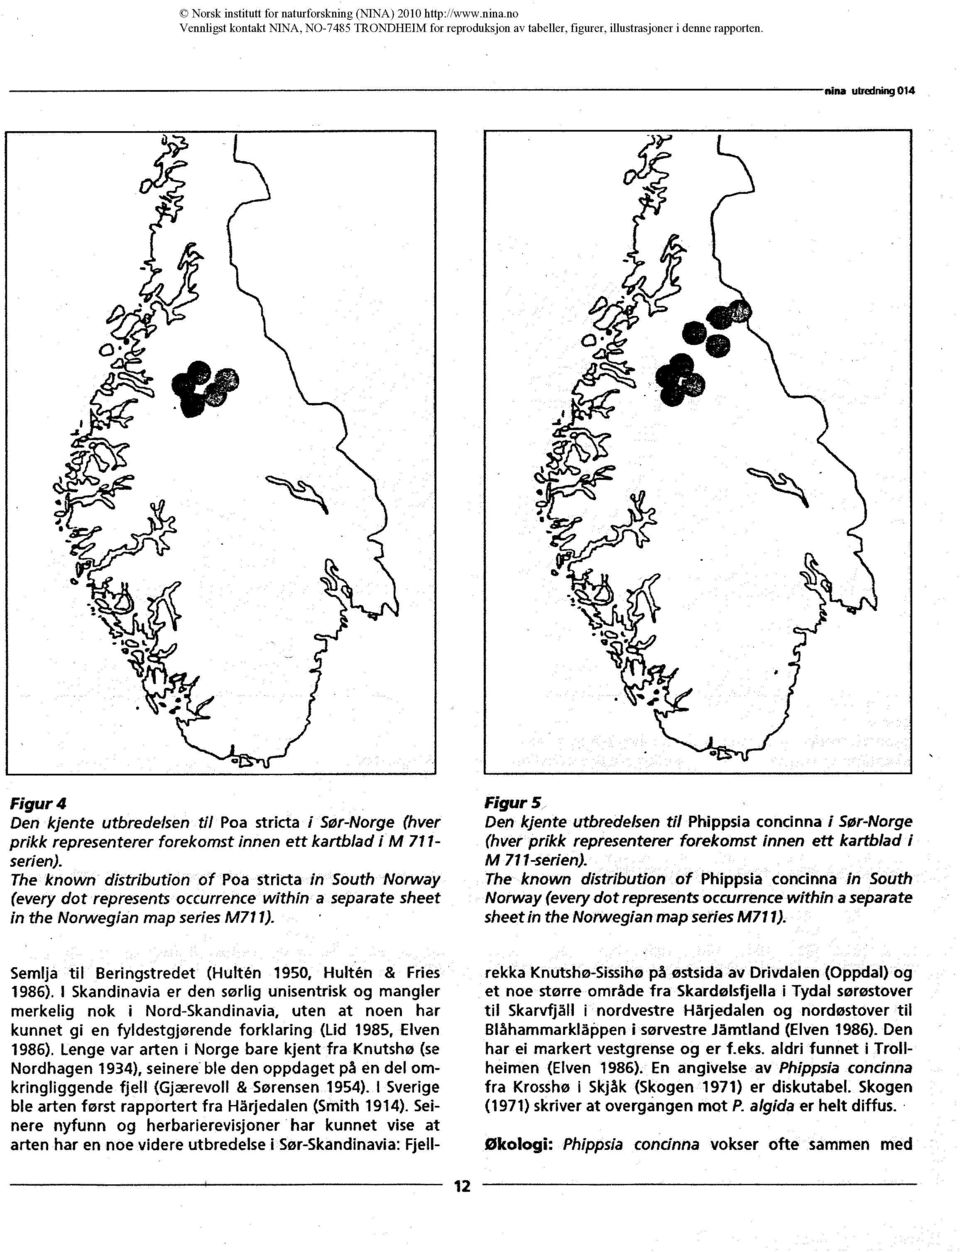 Figur 5 Den kjente utbredelsen til Phippsia concinna i Sør-Norge (hver prikk representerer forekomst innen ett kartbiad i M 711-serien).